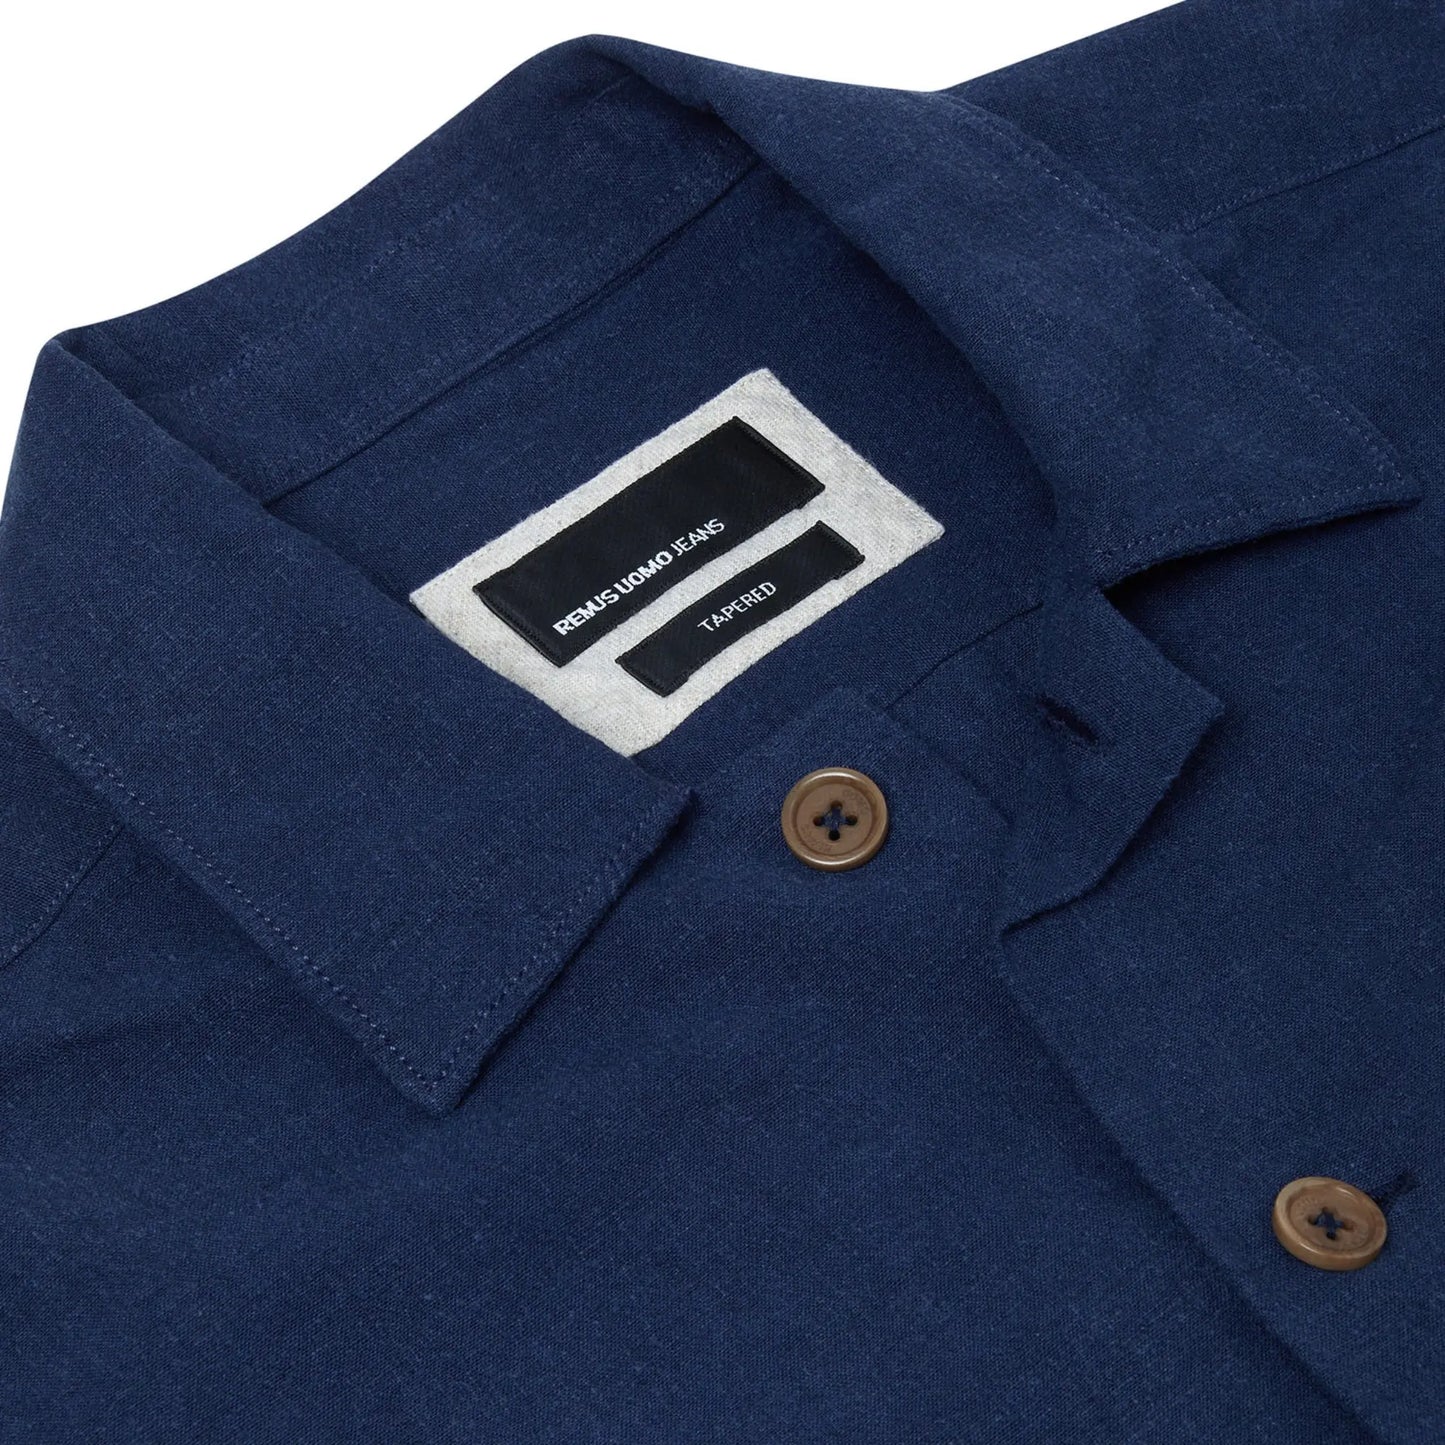 Buy Remus Uomo Linen Overshirt - Blue | Overshirtss at Woven Durham